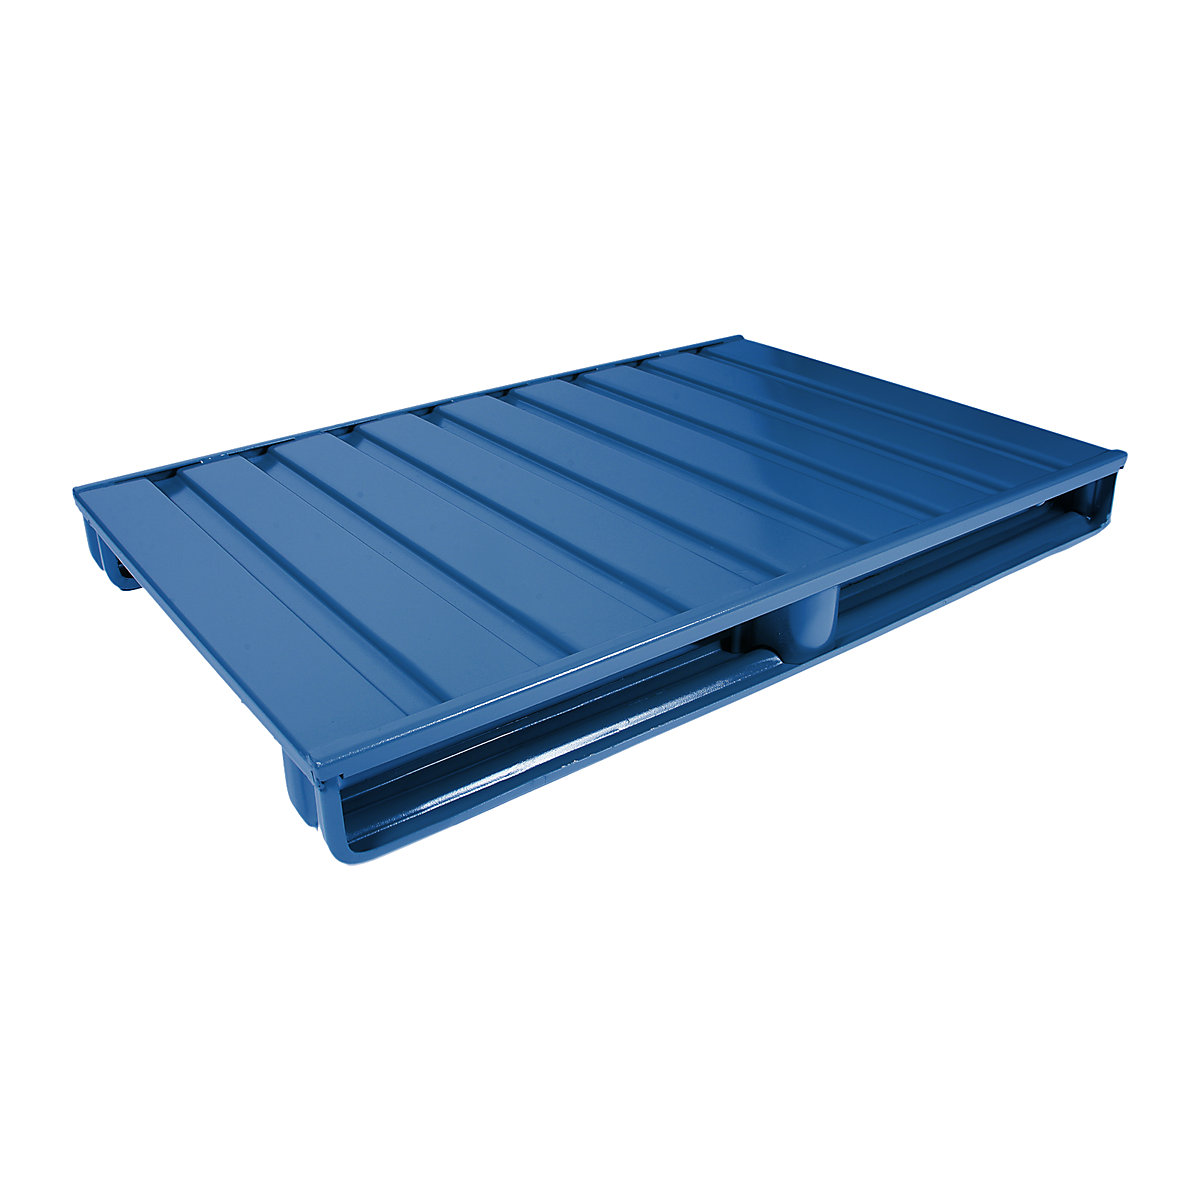 Palete plana de aço – Heson, CxL 1000 x 800 mm, capacidade de carga 2000 kg, azul genciana, a partir de 10 unid.-1